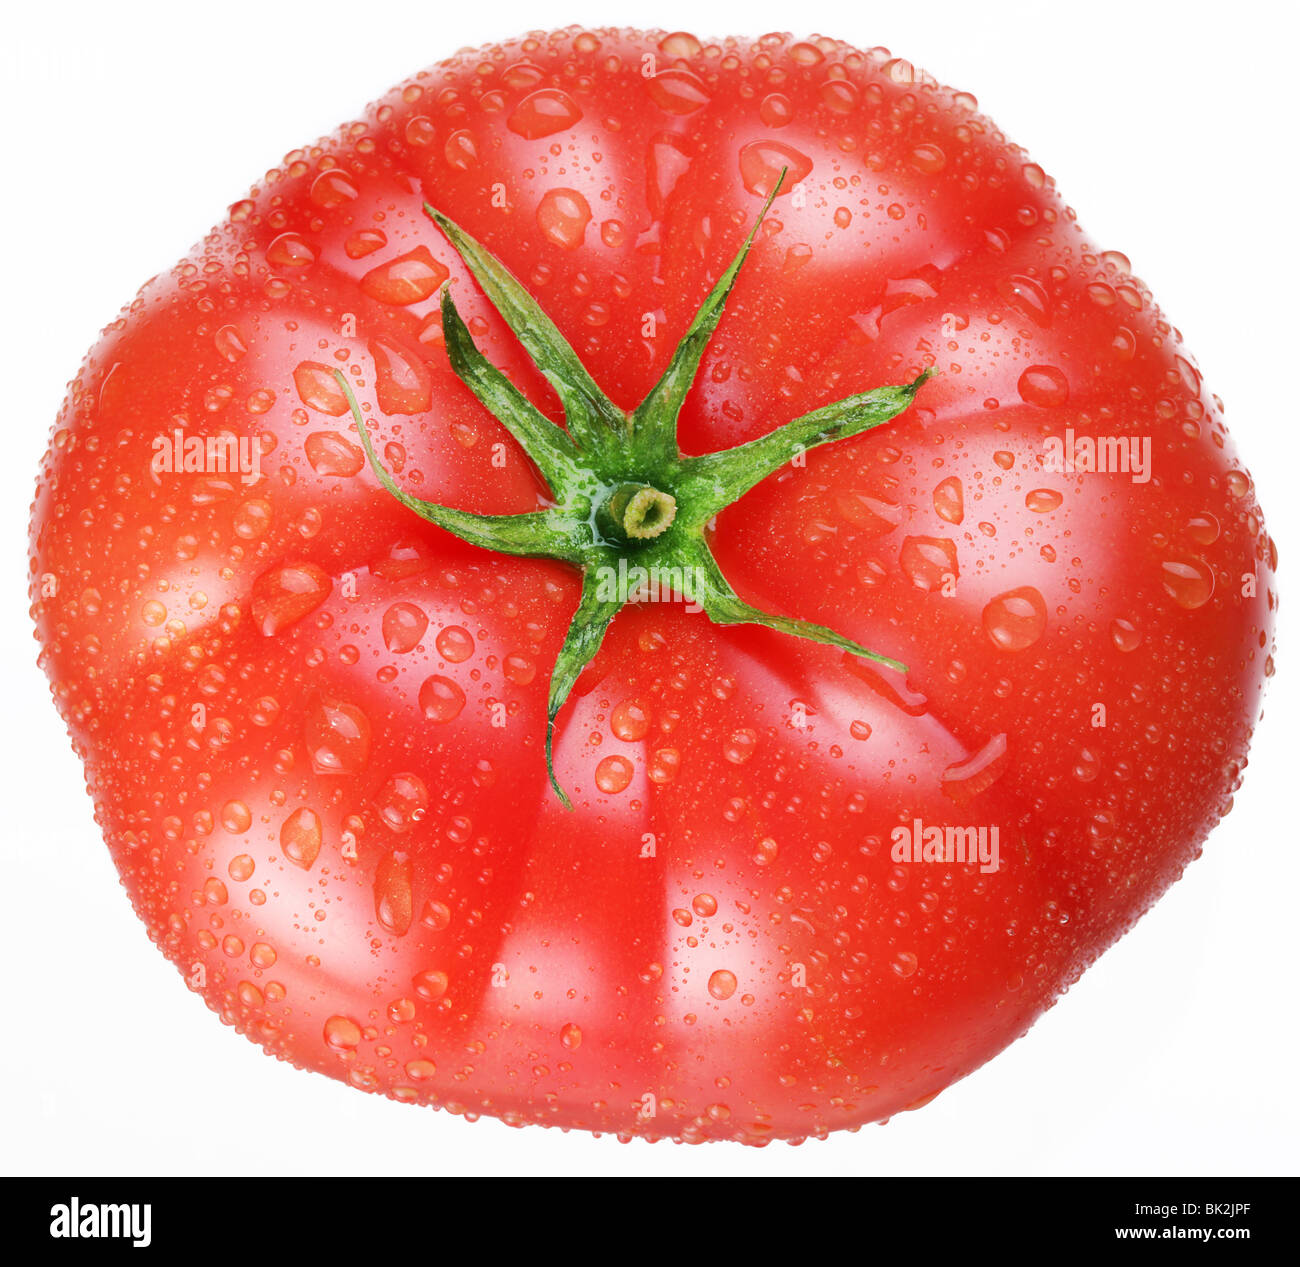 ripe tomato on a white background Stock Photo